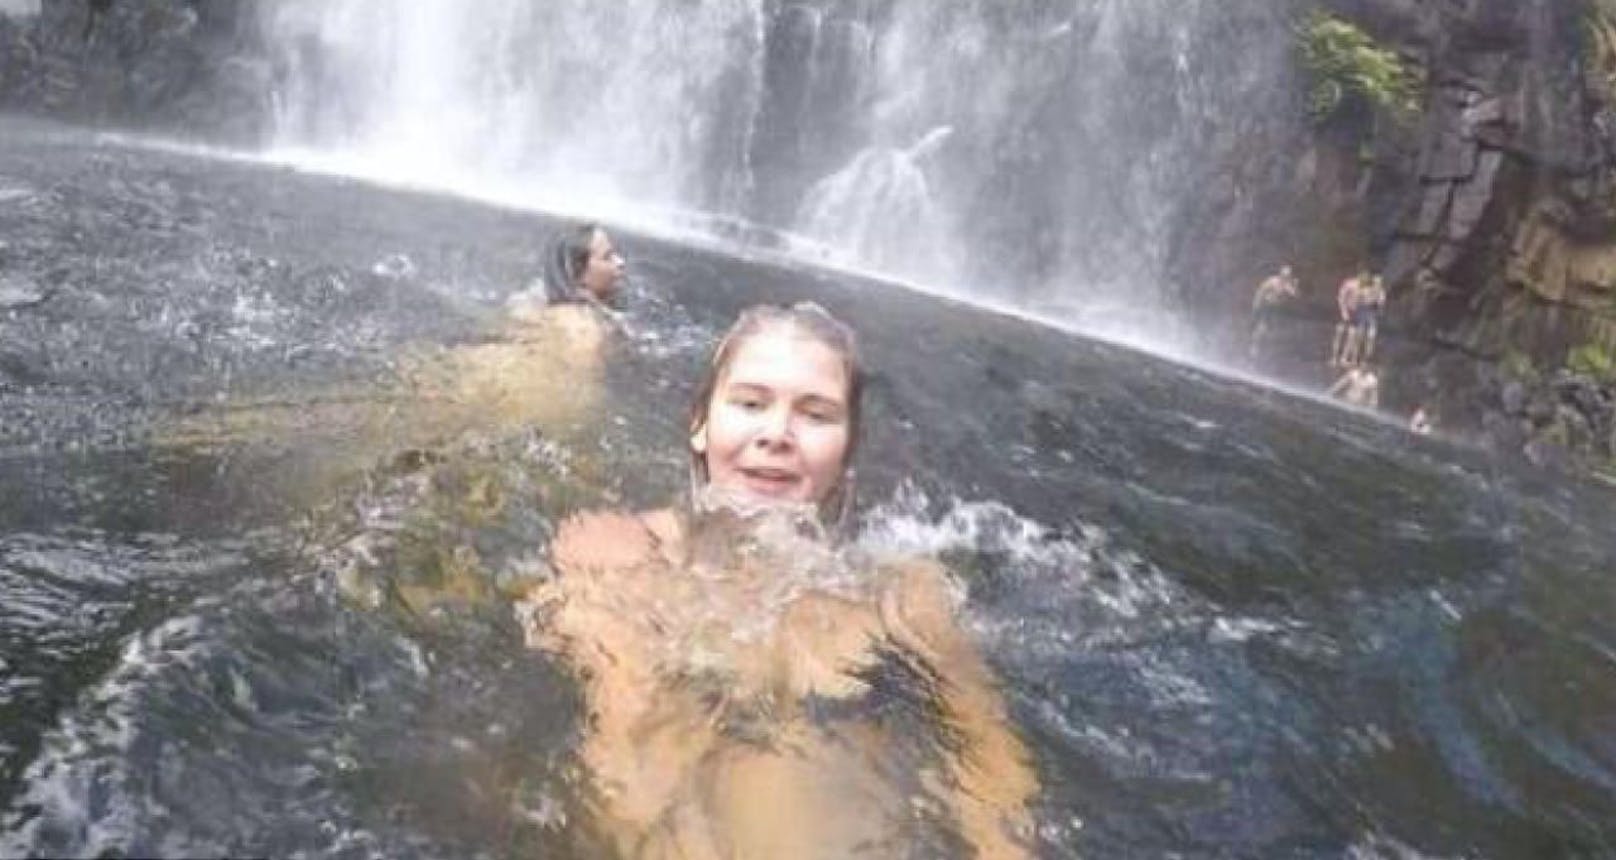 Touristin Anneka Bading schwimmt und filmt sich. Im Hintergrund ertrinkt ein Urlauber (28), seine Freunde versuchen ihn gerade zu retten!